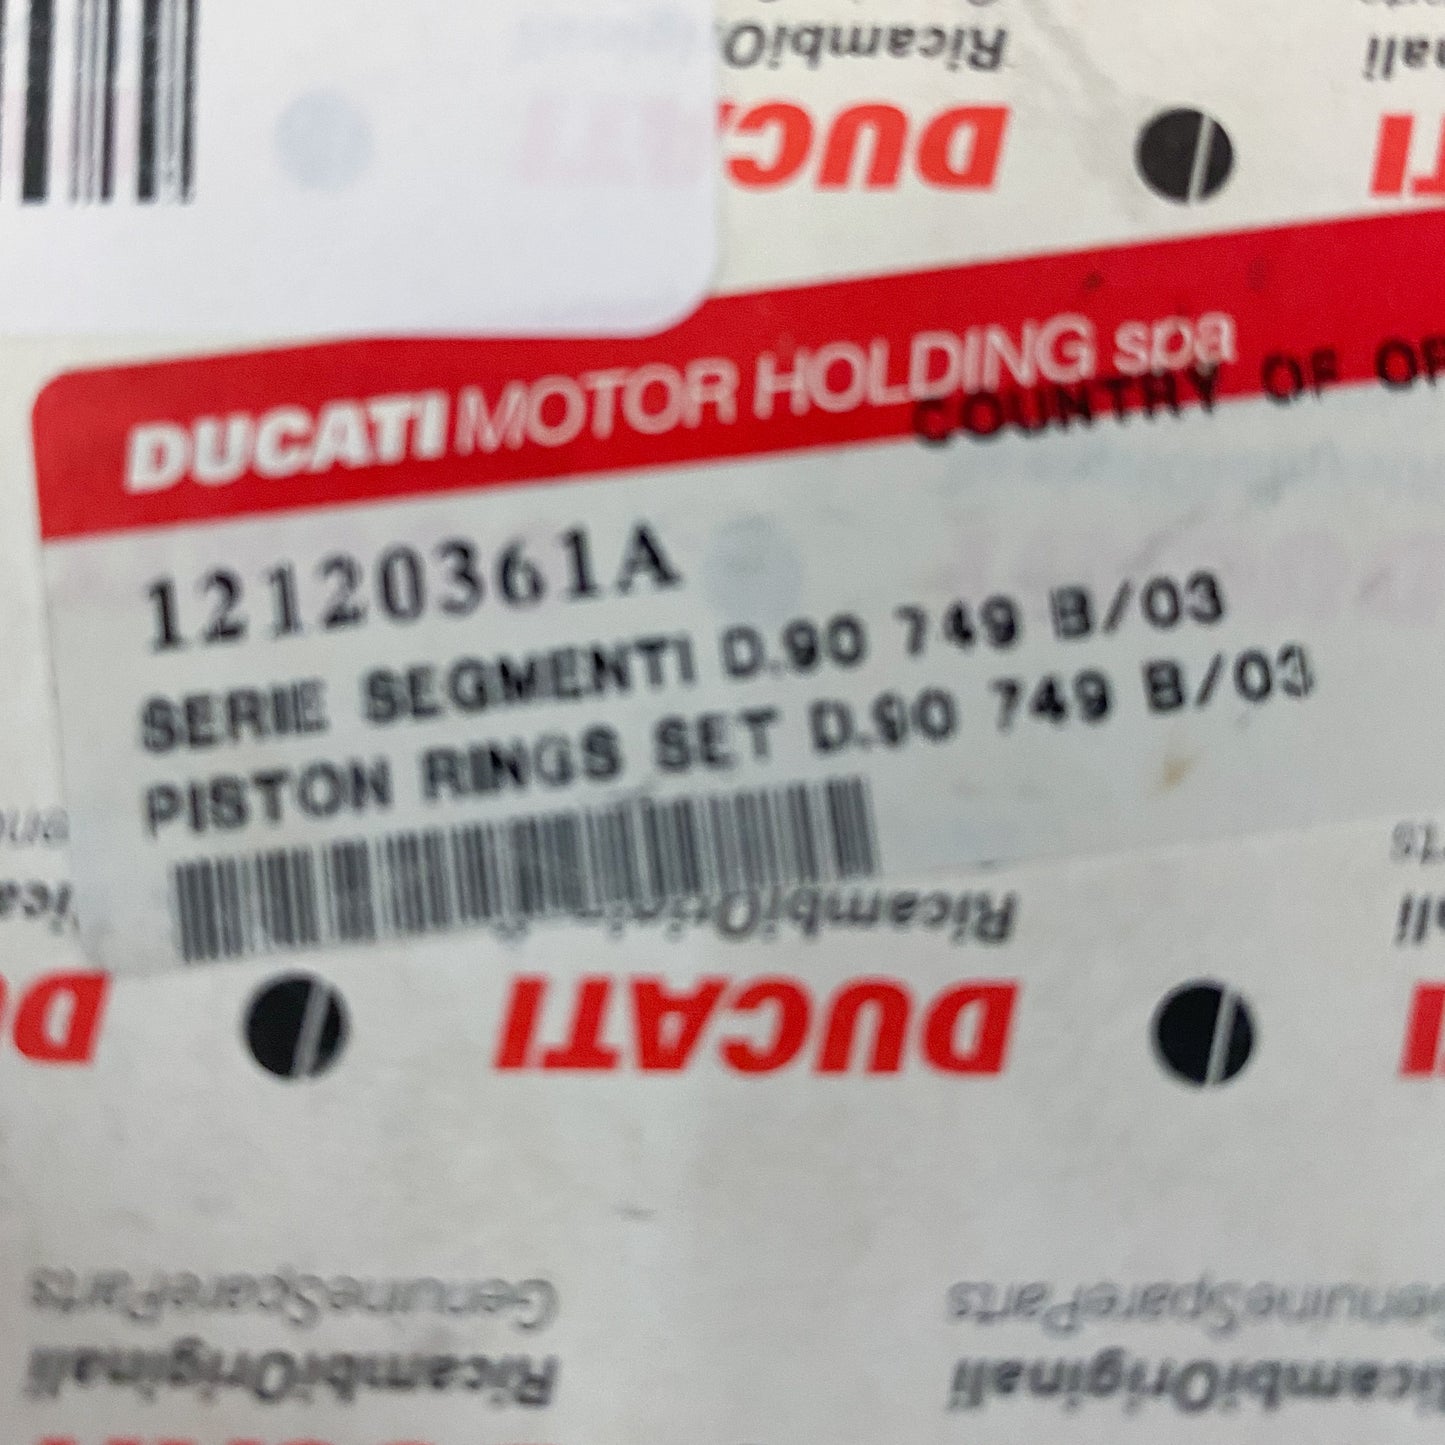 Ducati Piston Ring Set D.90 749 12120361A